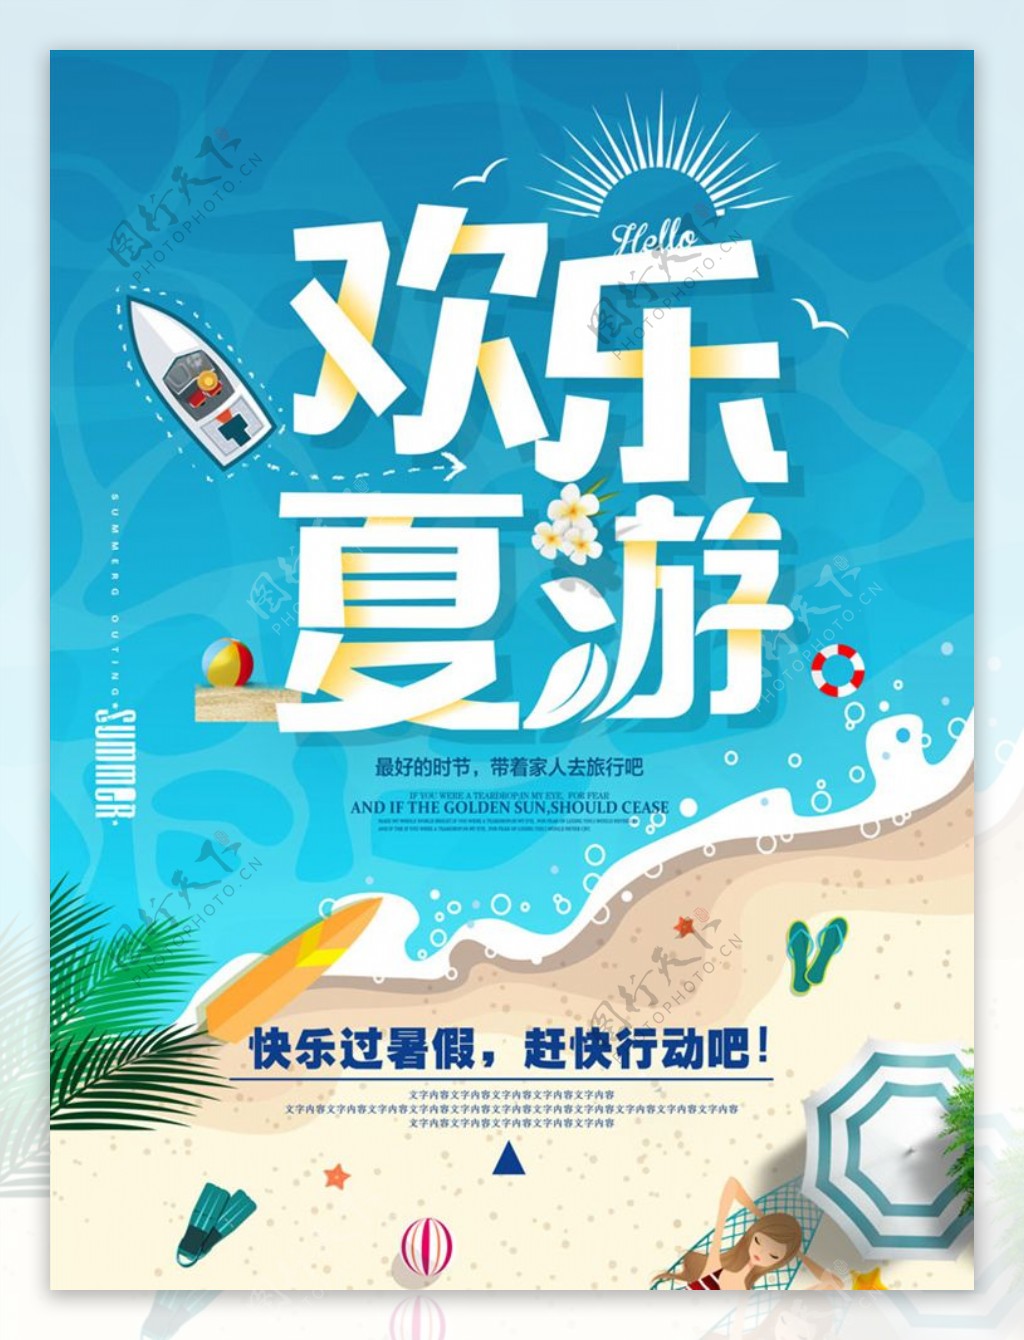 高清夏季旅游海报